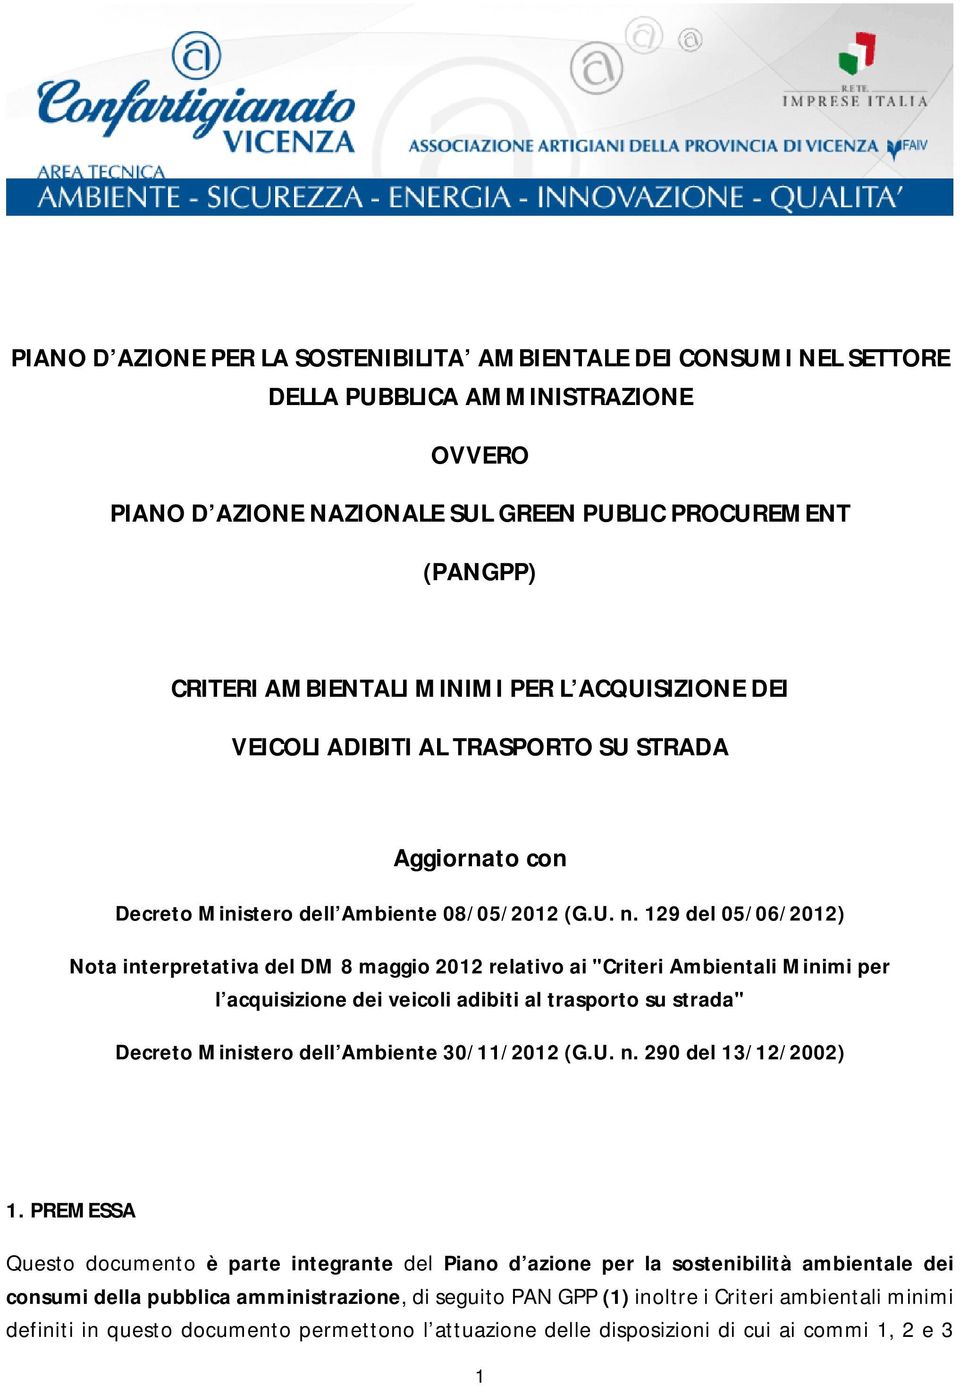 129 del 05/06/2012) Nota interpretativa del DM 8 maggio 2012 relativo ai "Criteri Ambientali Minimi per l acquisizione dei veicoli adibiti al trasporto su strada" Decreto Ministero dell Ambiente